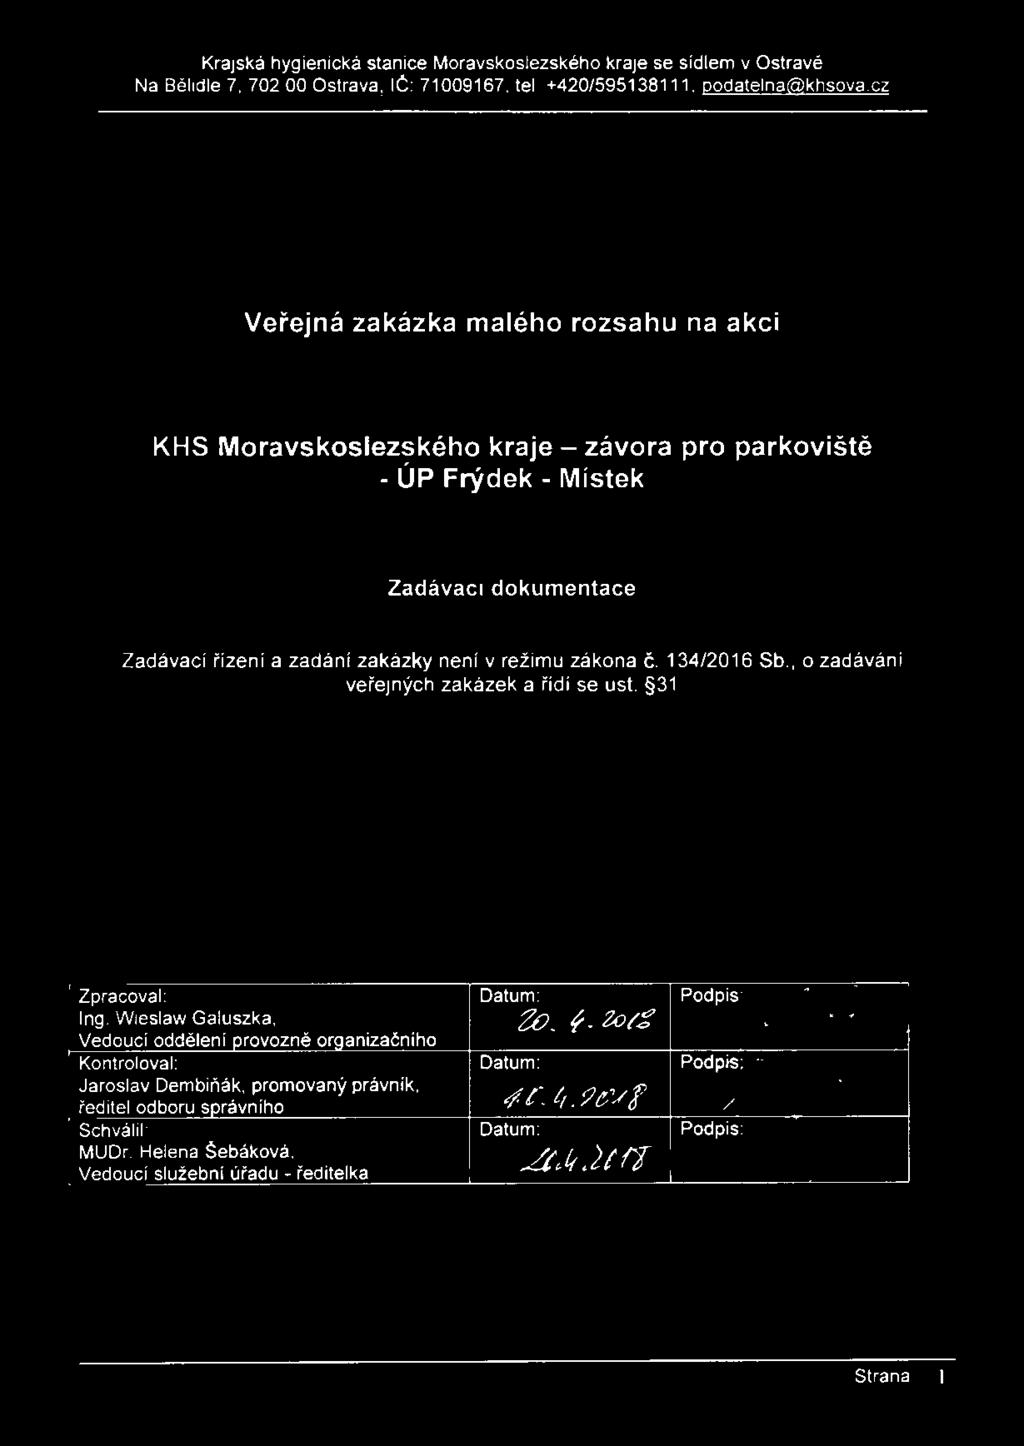 režimu zákona č. 134/2016 Sb., o zadávání veřejných zakázek a řídí se ust. 31 Zpracoval: Ing.